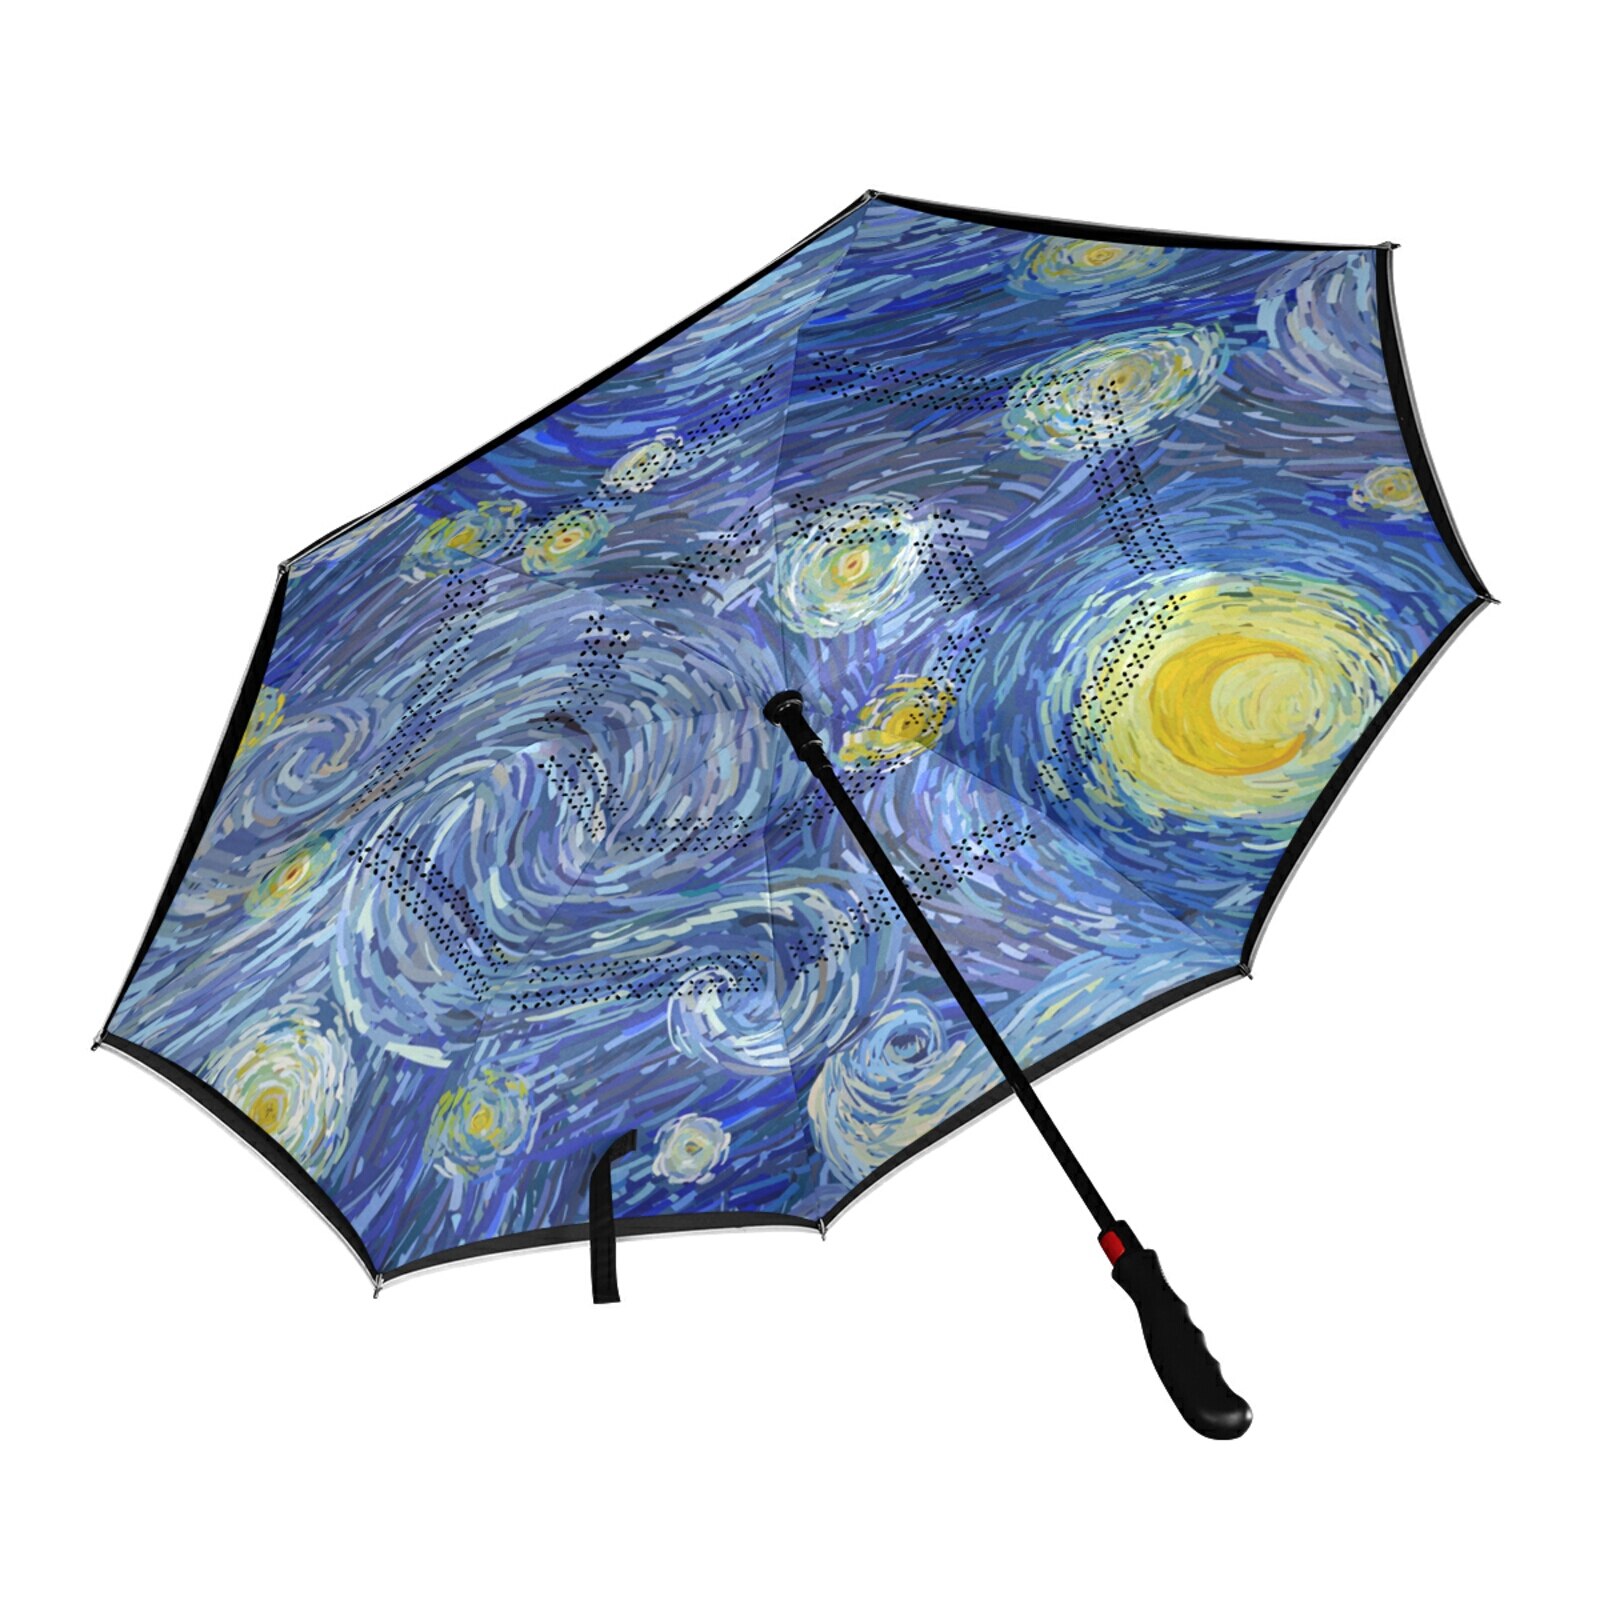 Auto Reverse Paraplu Grote Automatische Handsfree Vouwen Anti-Bone Paraplu Rechte Paraplu Van Gogh Print Paraplu